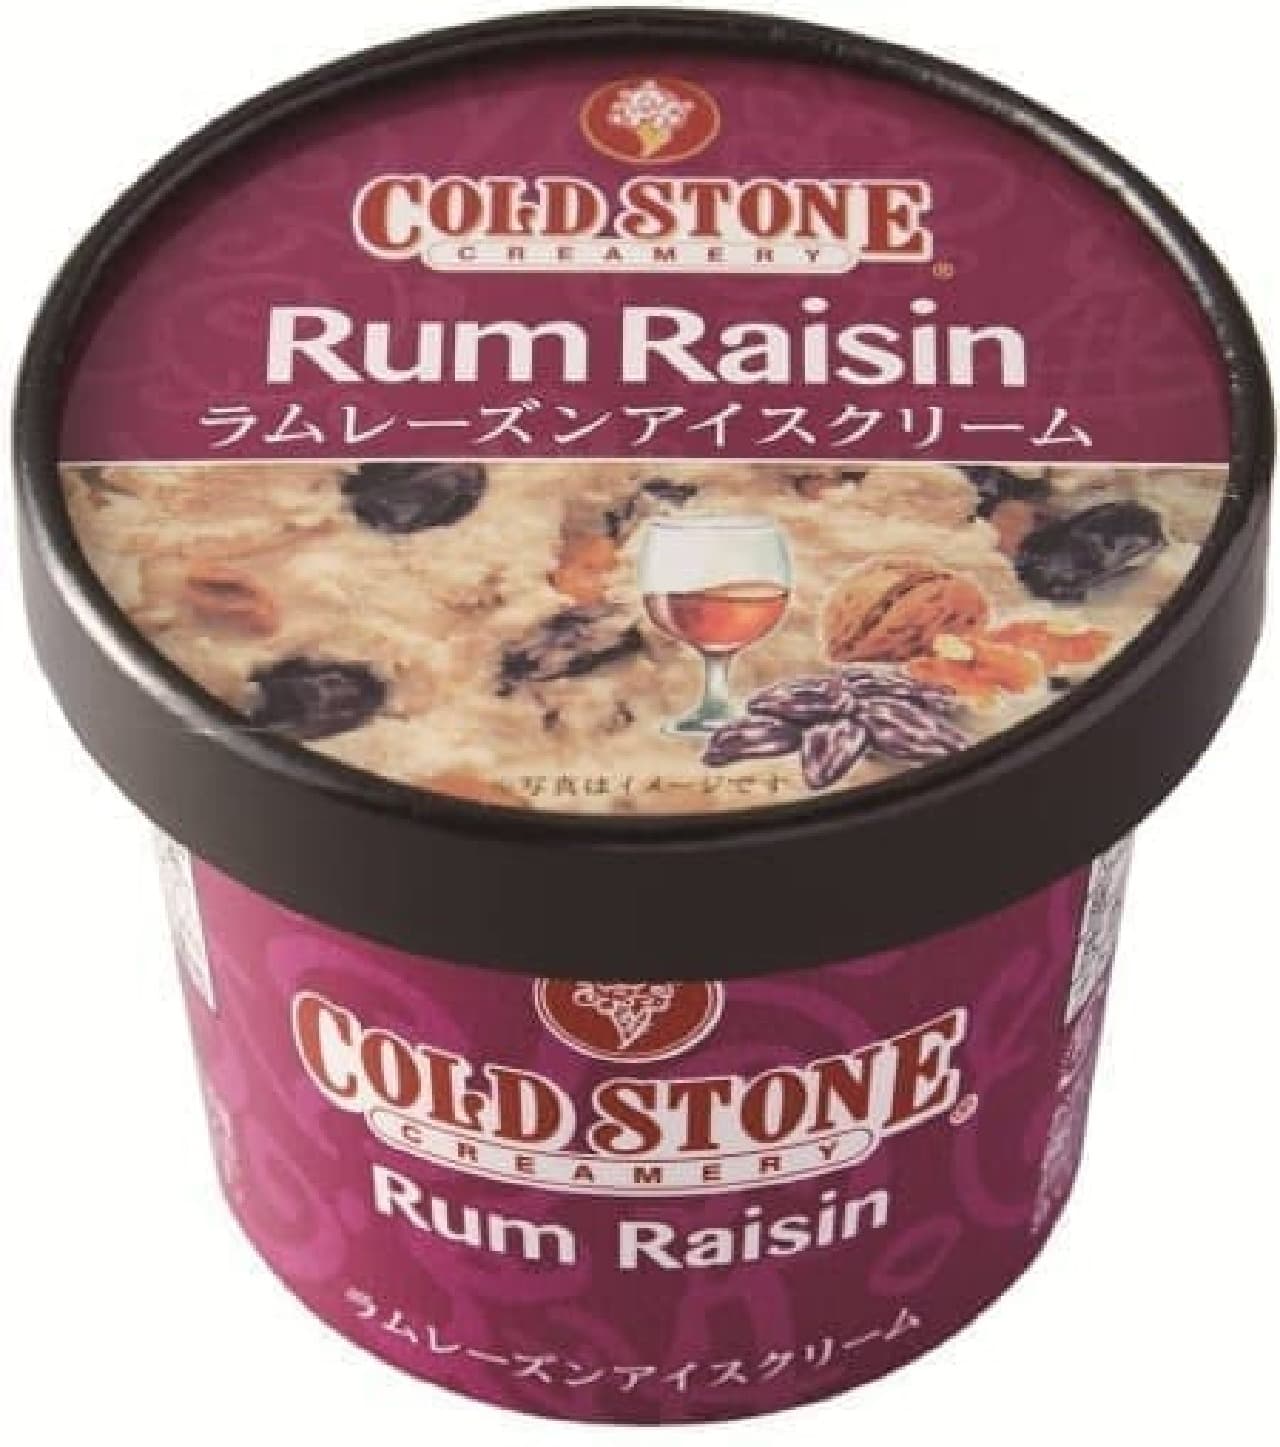 7-ELEVEN "Cold Stone Creamery Lamb Raisin Ice Cream"